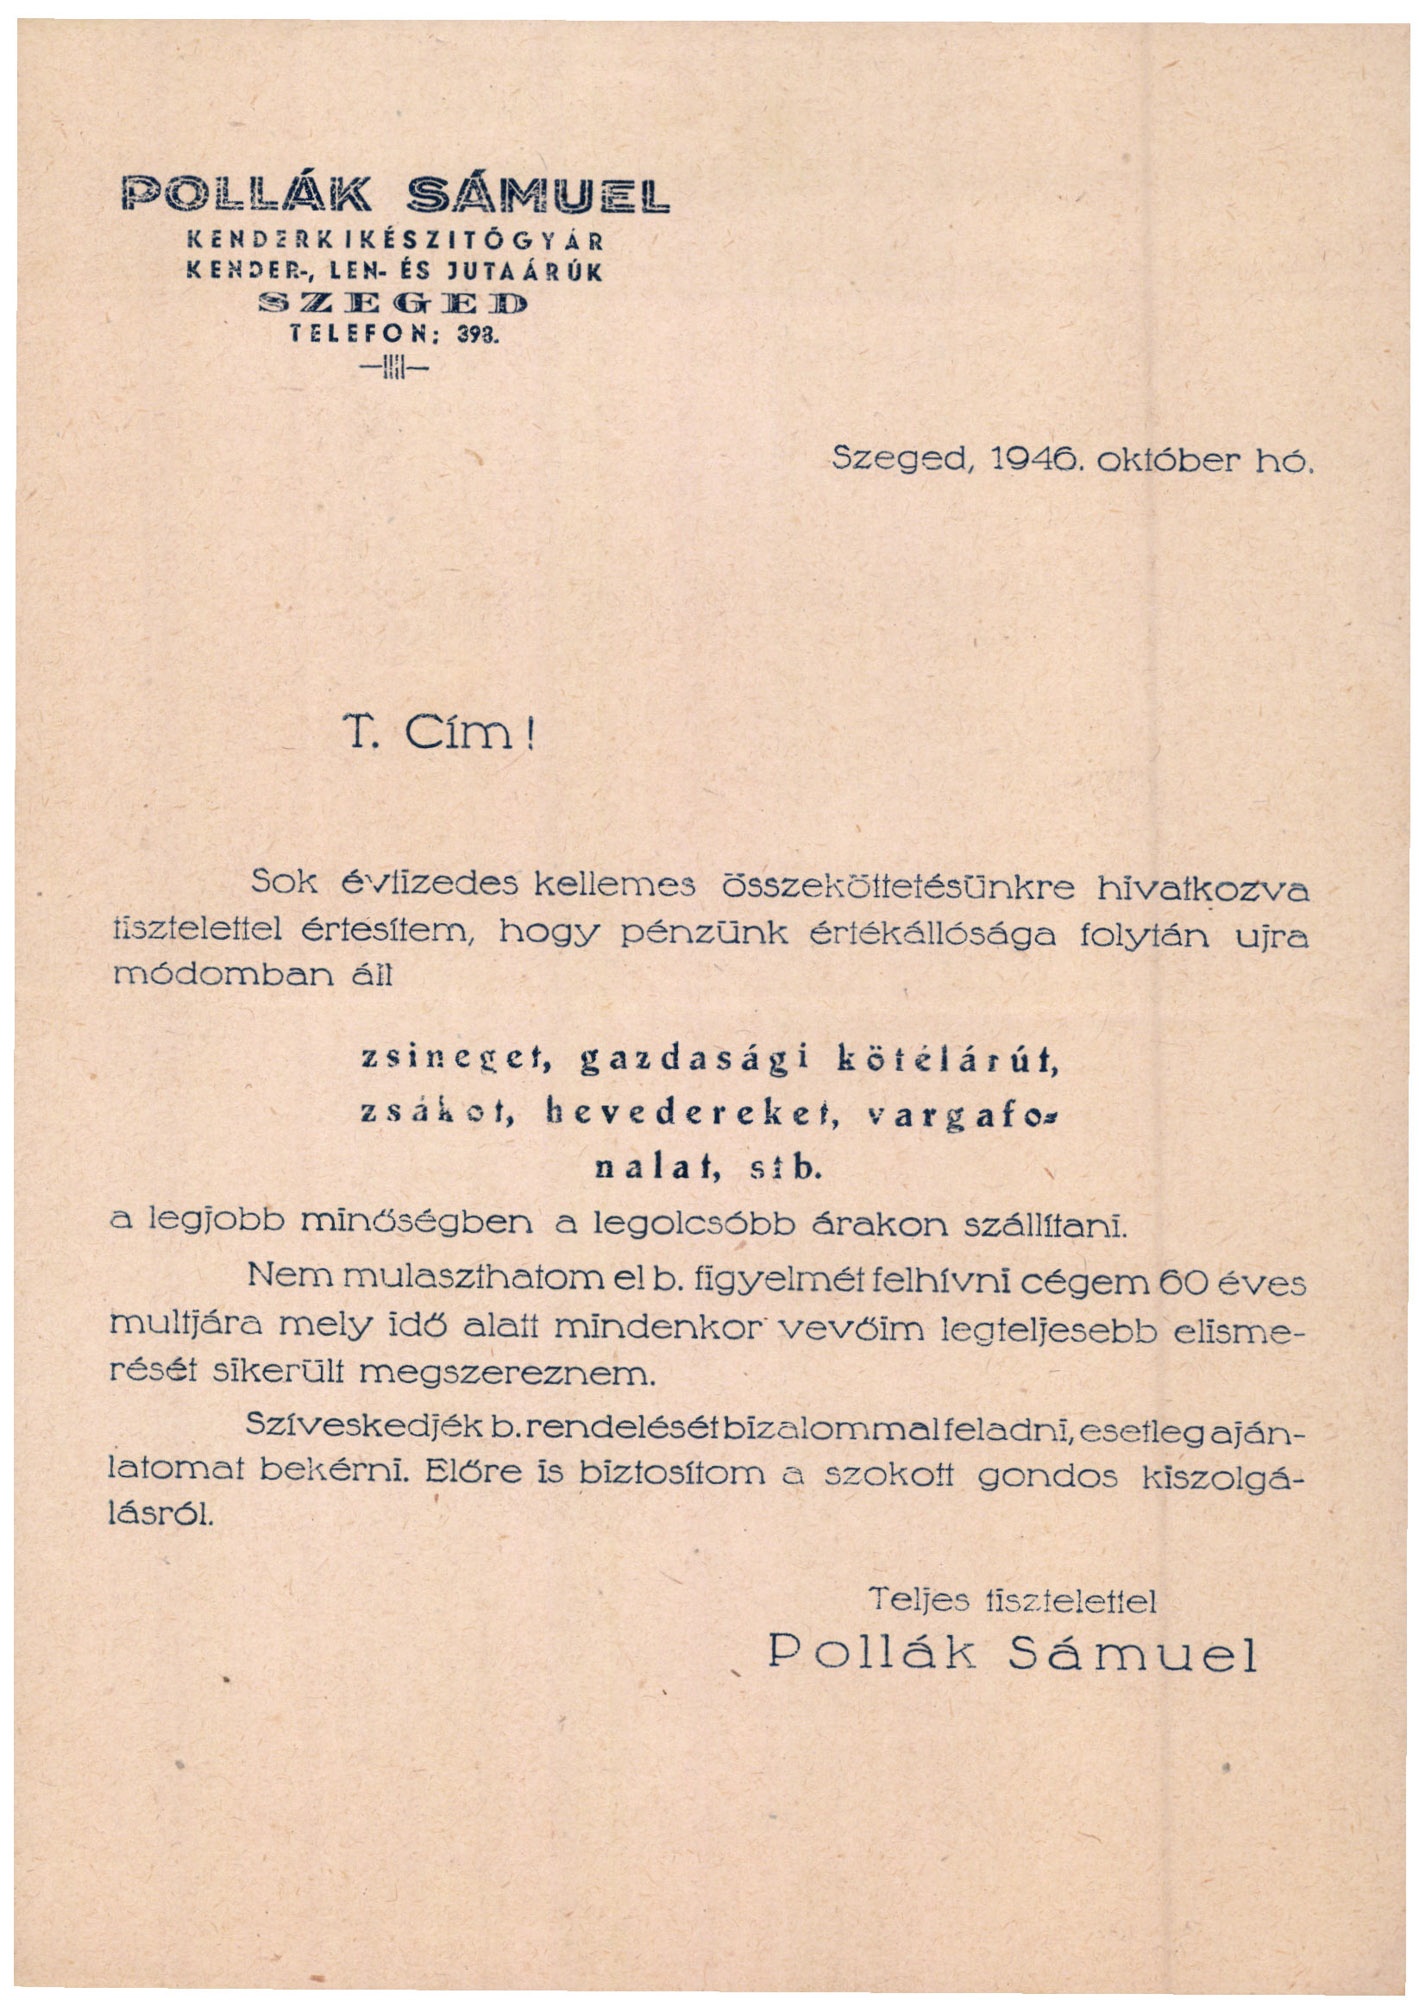 Pollák Sámuel Kenderkikészítő Gyár, kender-, len- és jutaárúk (Magyar Kereskedelmi és Vendéglátóipari Múzeum CC BY-NC-SA)